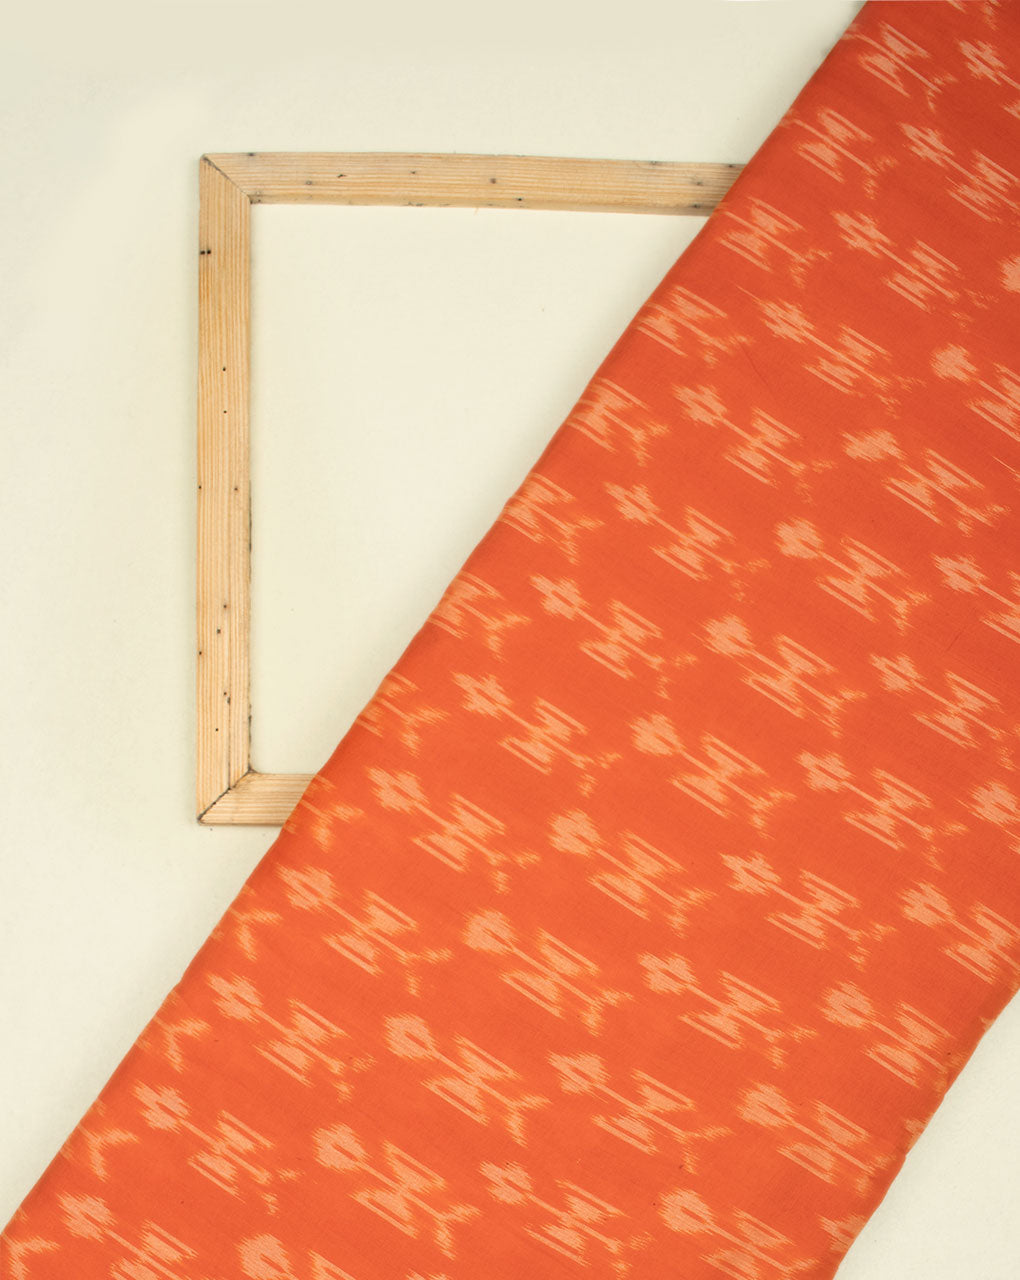 Orange & Off-White Warli Pattern Woven Mercerized Ikat Cotton Fabric - Fabriclore.com